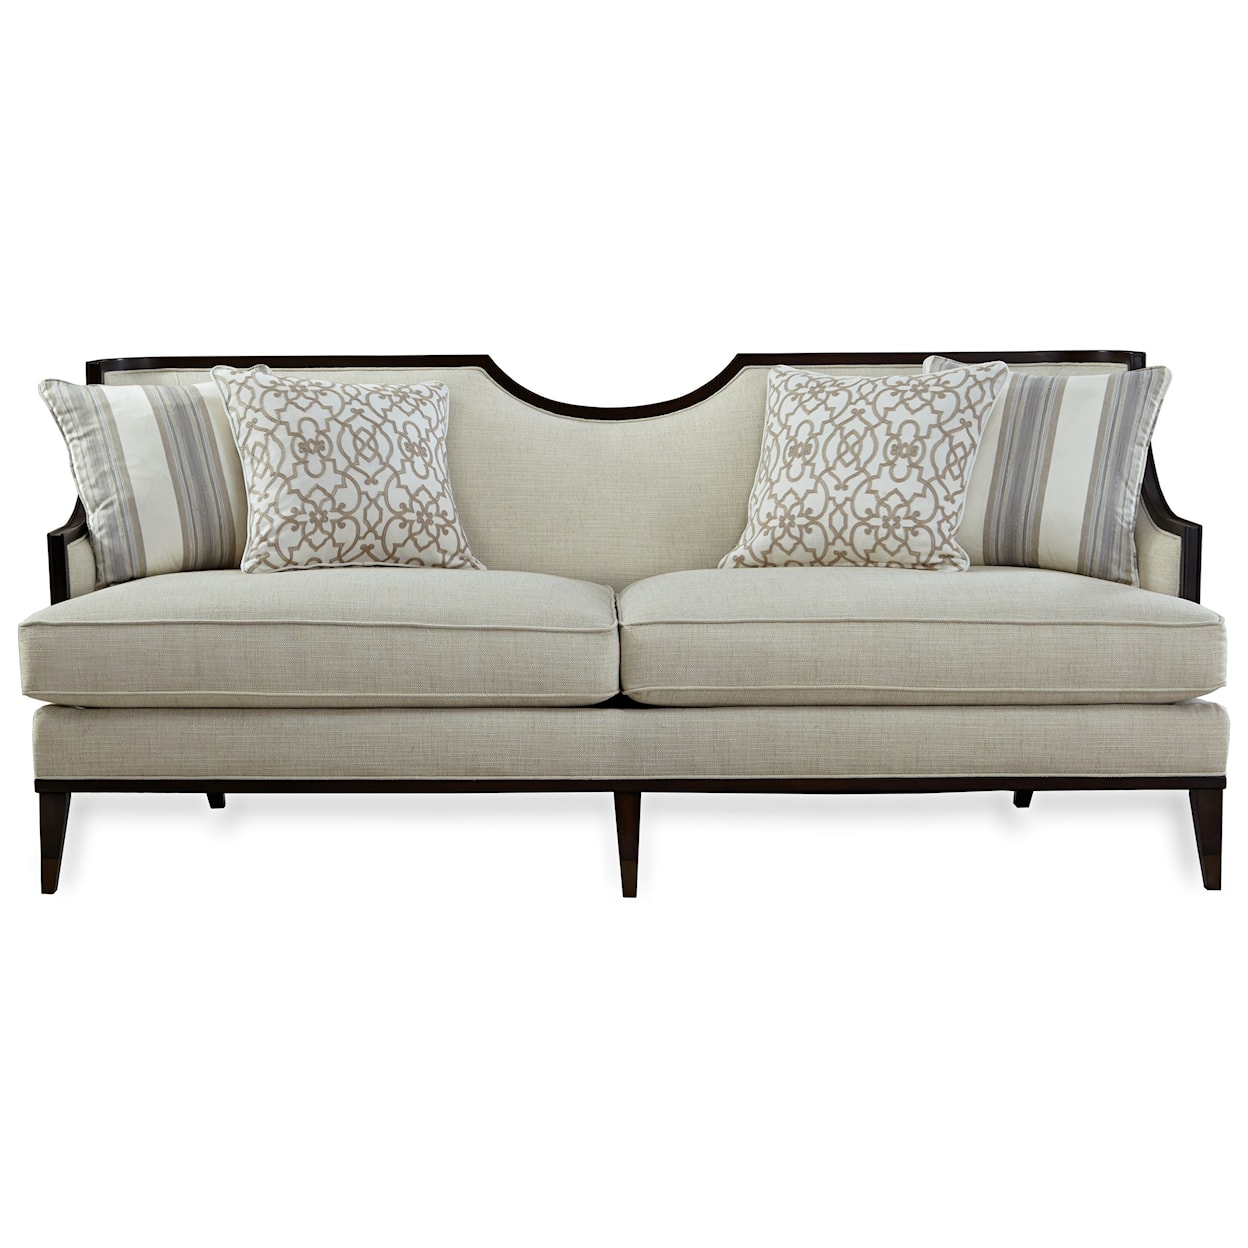 A.R.T. Furniture Inc Intrigue Harper Sofa